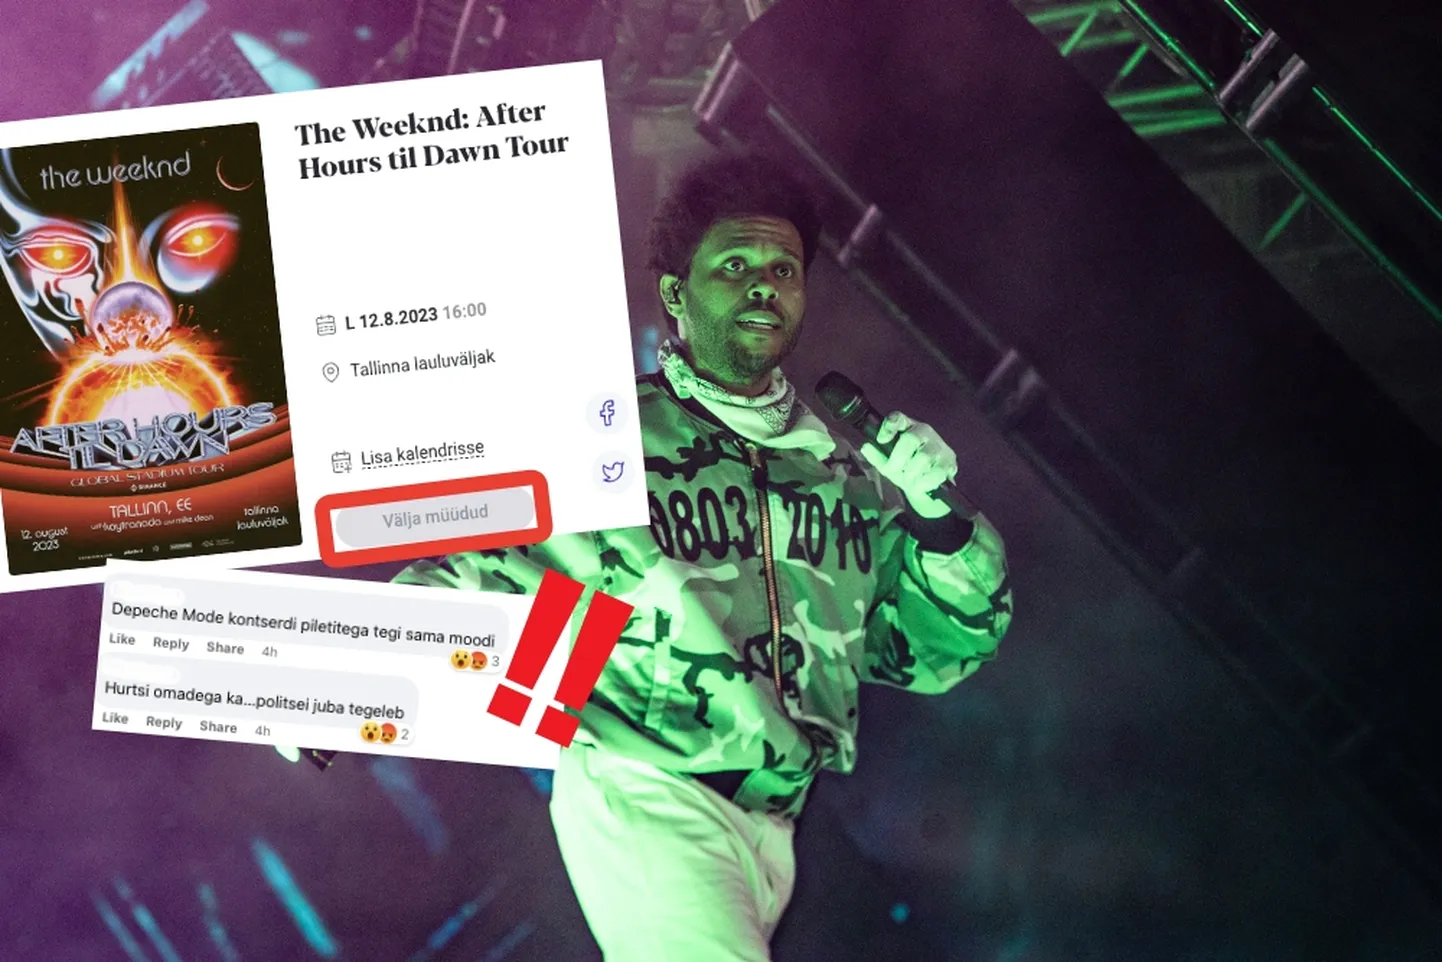 Билеты на концерт The Weeknd на Таллиннском певческом поле уже распроданы. Организаторы не советуют покупать билеты с рук.